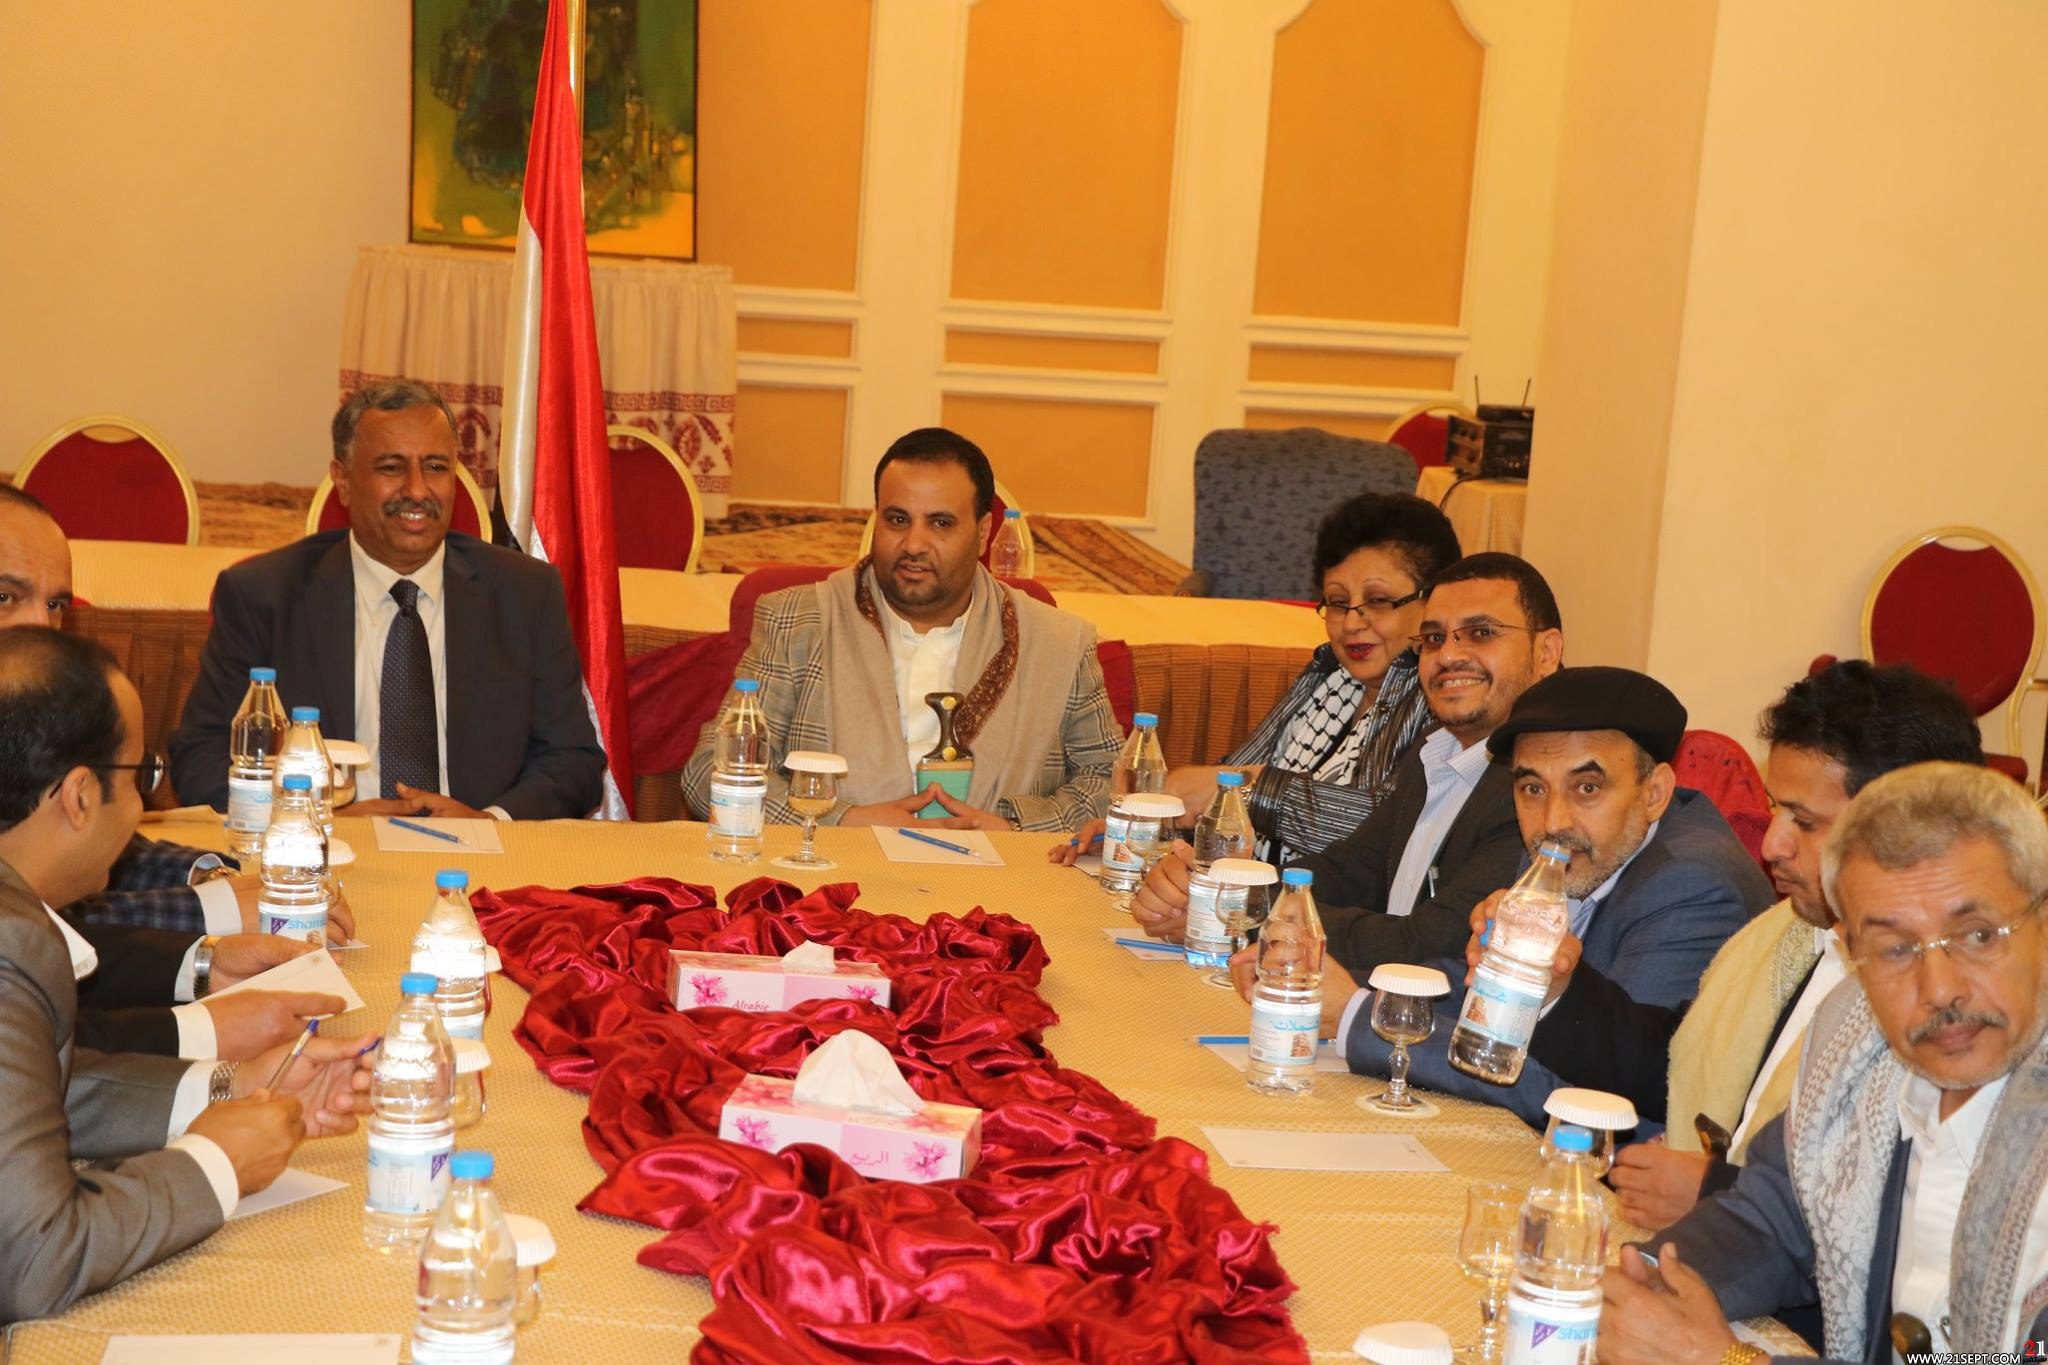 القوى اليمنية تعلن التوصل لاتفاق سياسي لقيادة البلاد